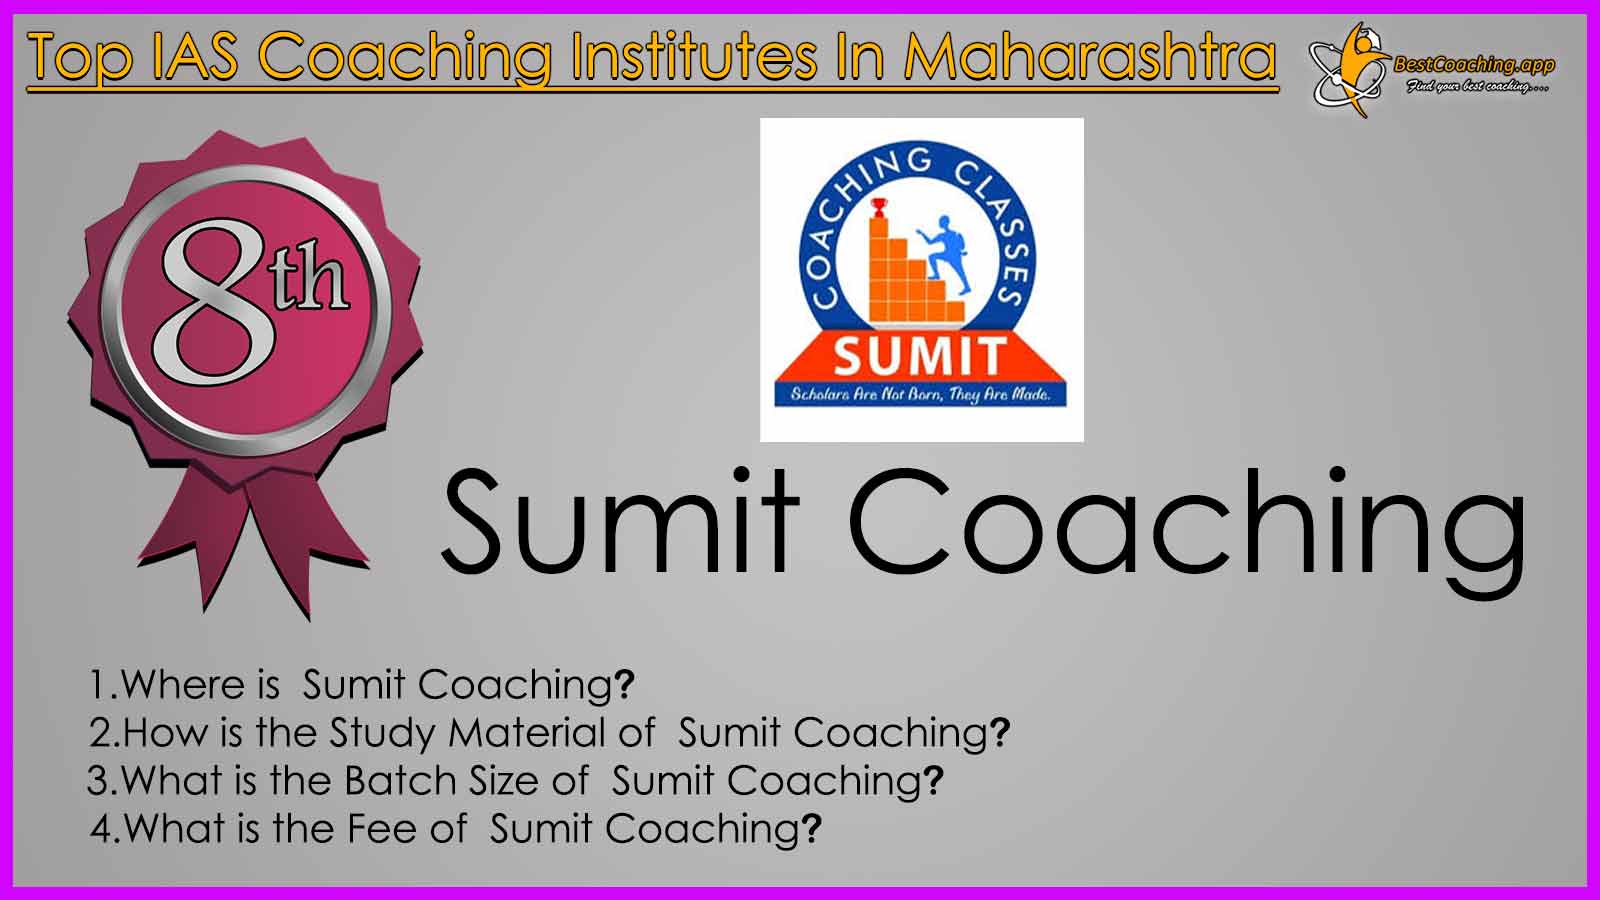 Best IAS Coaching in Maharashtra